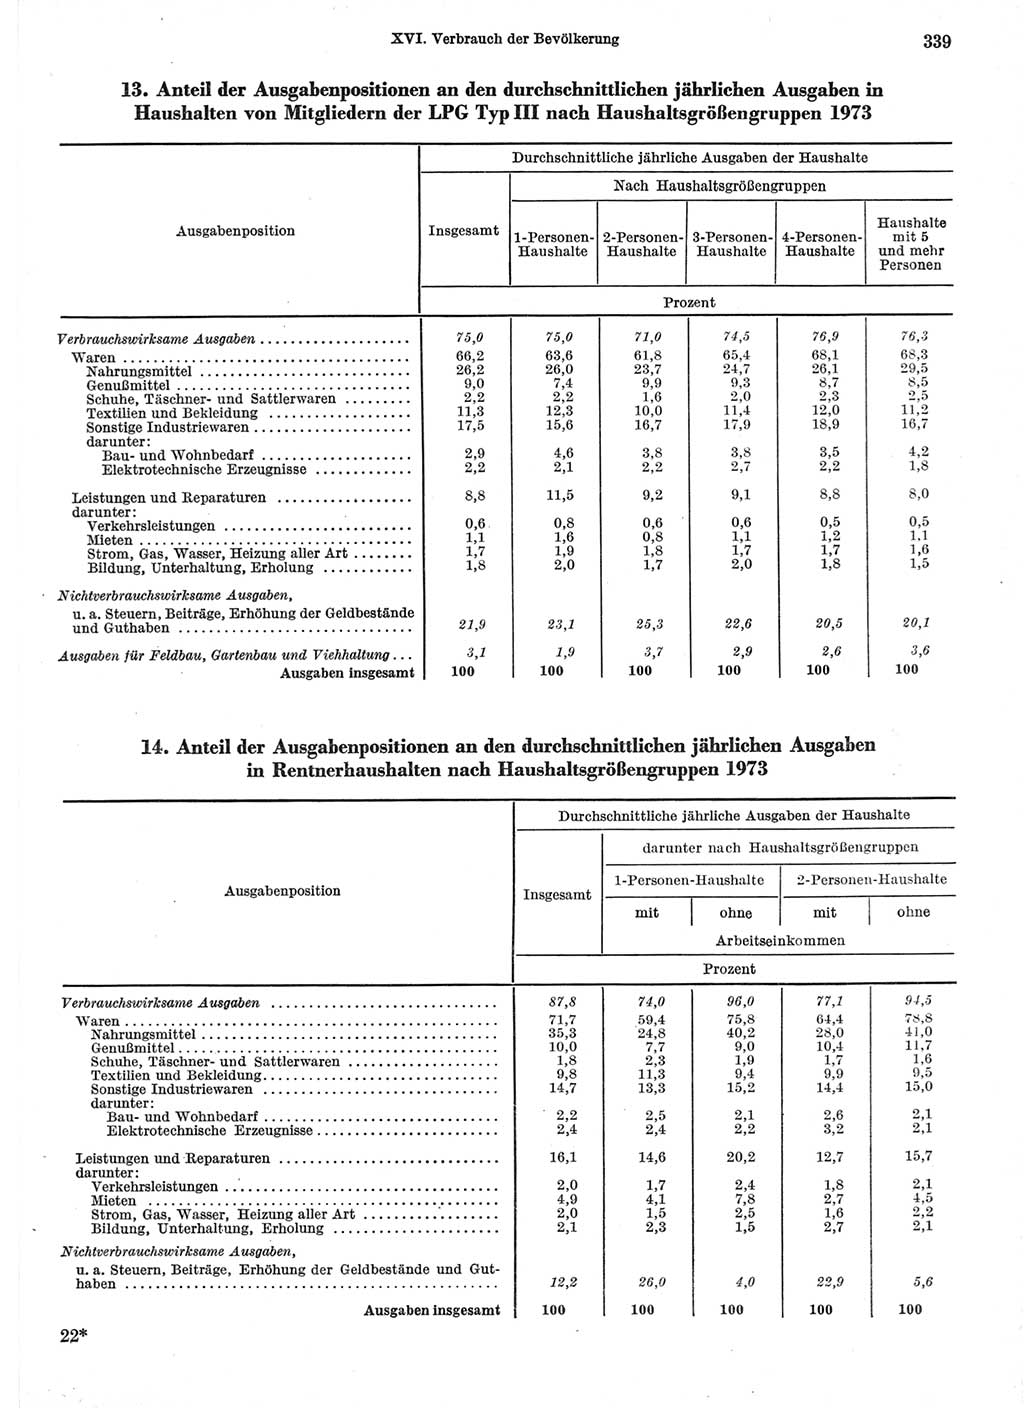 Statistisches Jahrbuch der Deutschen Demokratischen Republik (DDR) 1974, Seite 339 (Stat. Jb. DDR 1974, S. 339)